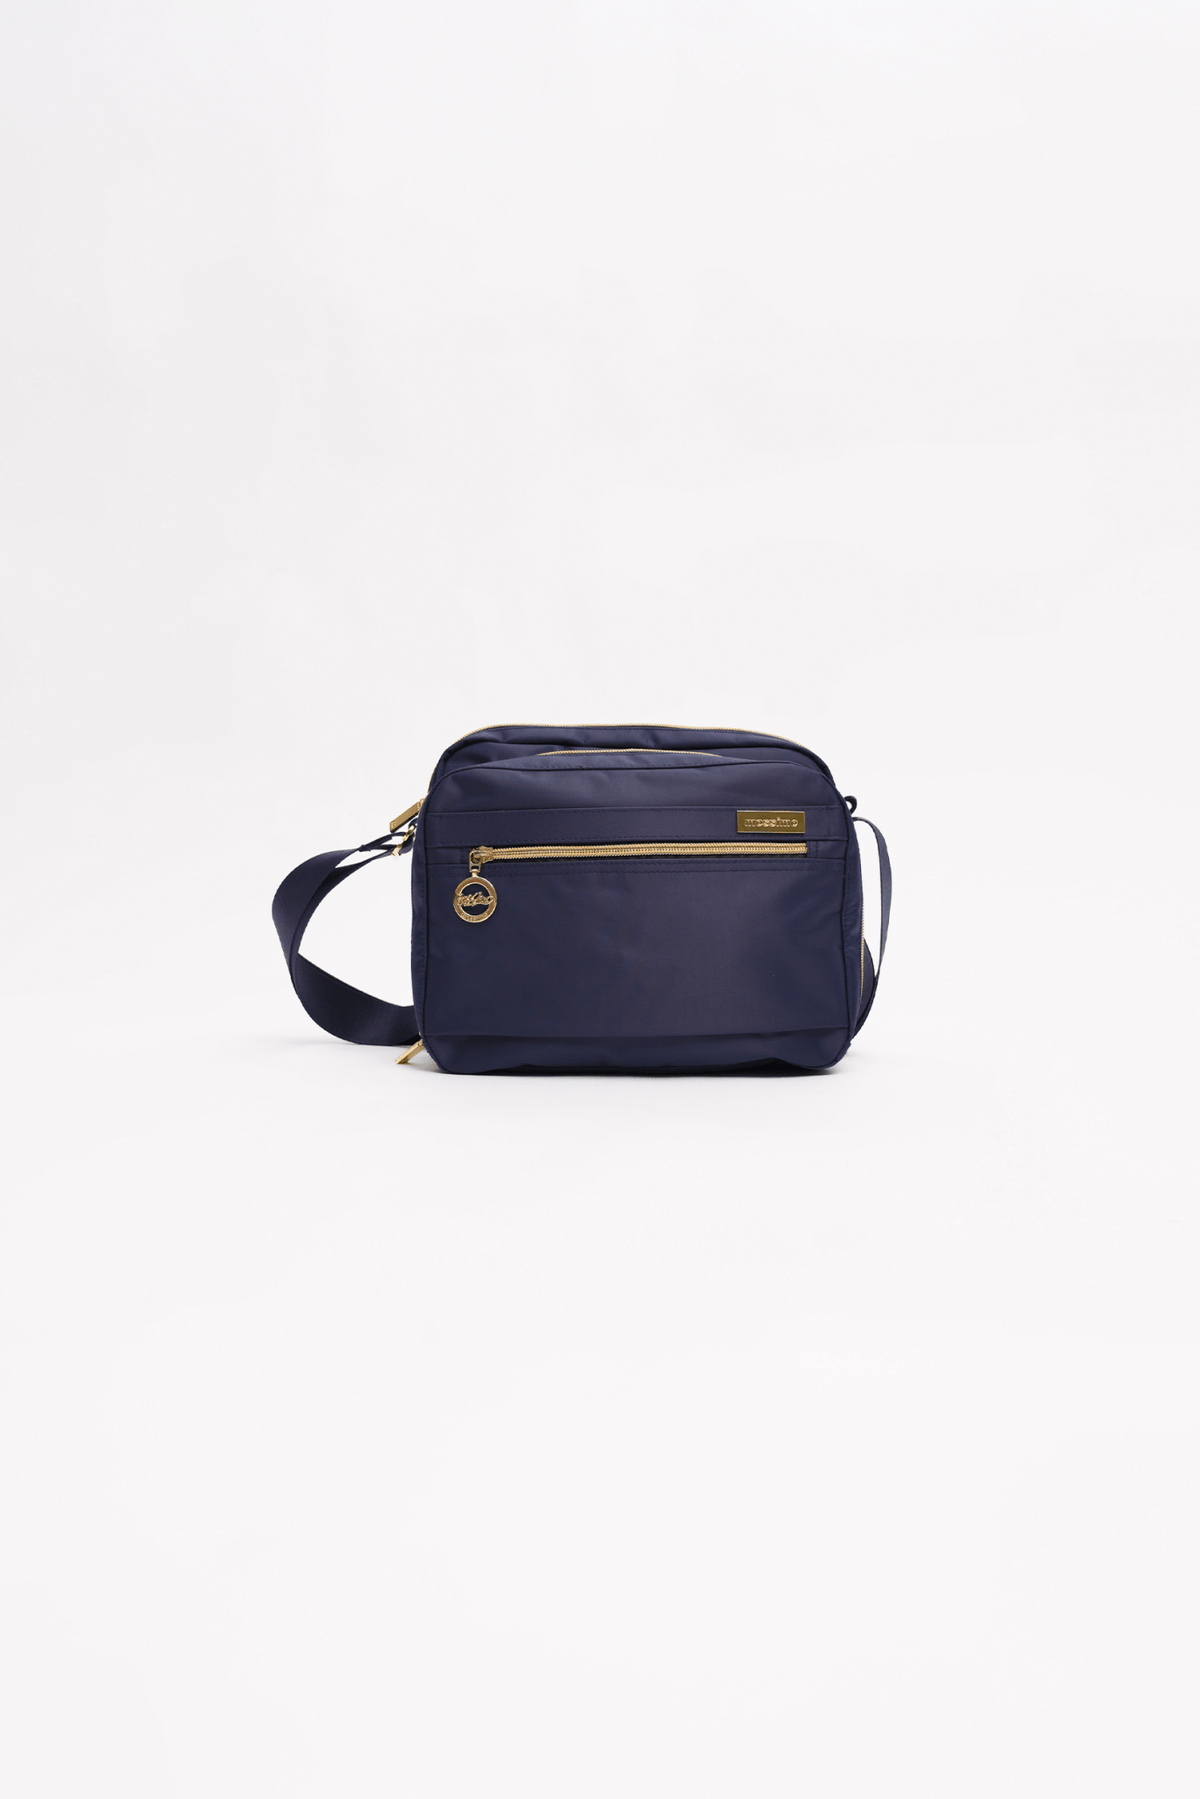 Blue Small Shoulder Bag - Mossimo PH